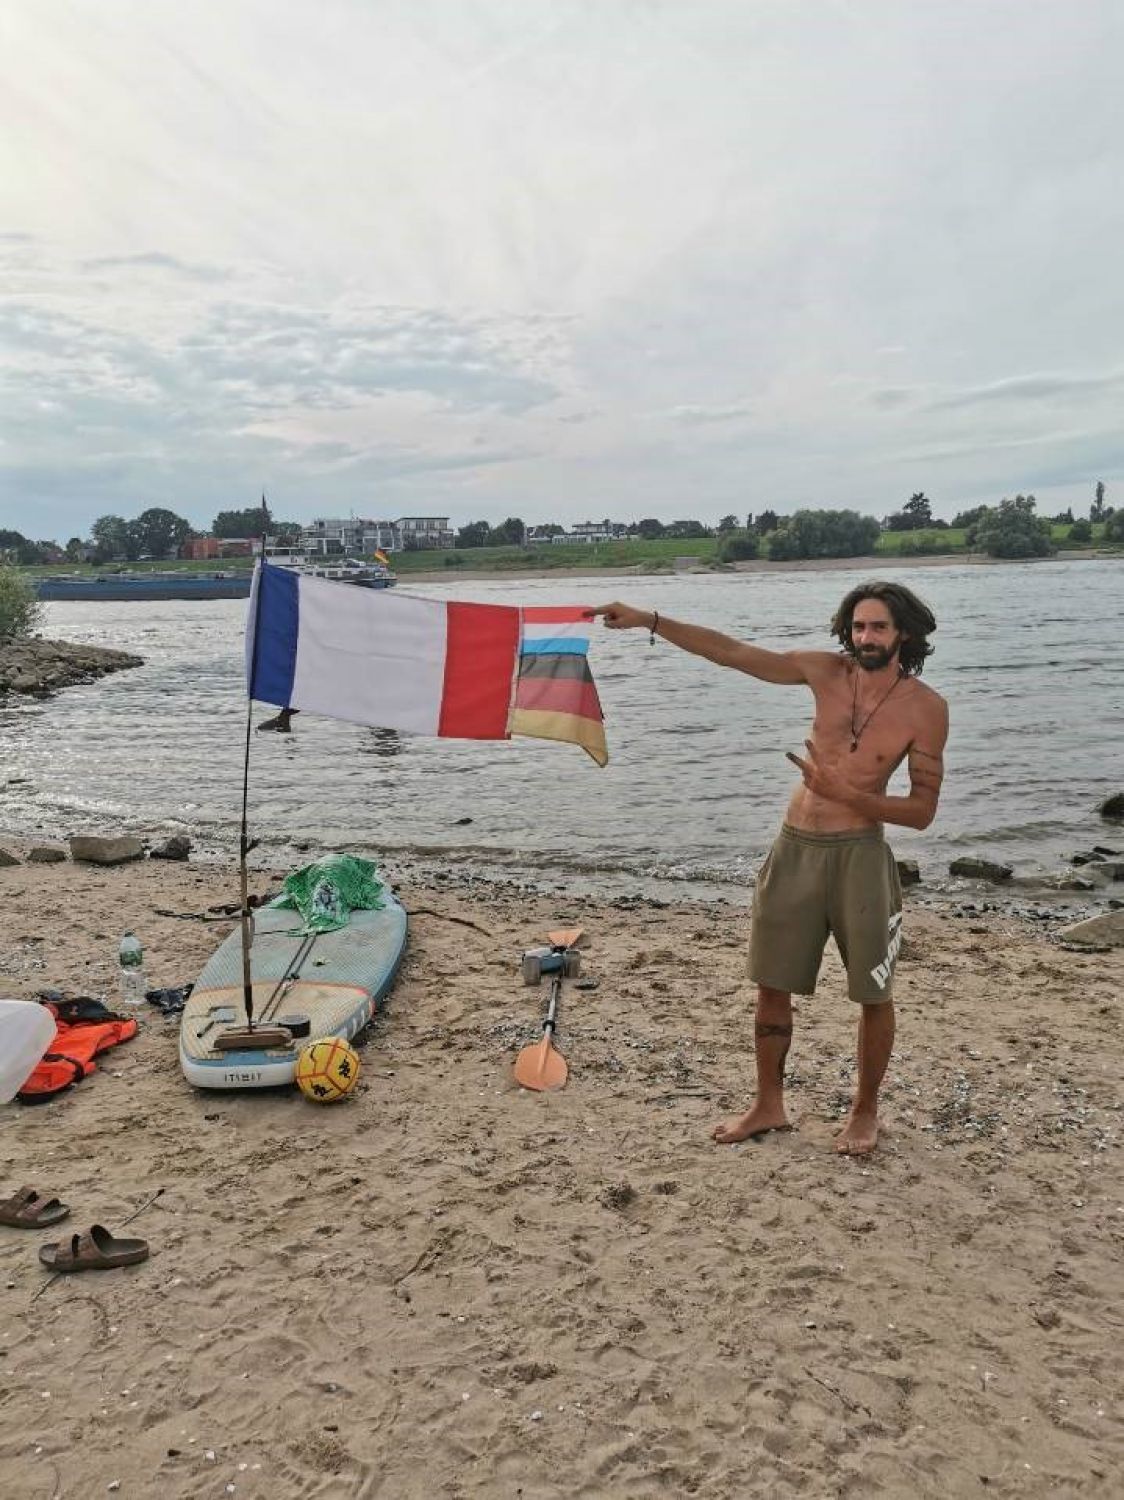 Du Saulnois aux Pays-Bas en paddle, le défi de Damien pour soutenir une victime des attentats de 2012